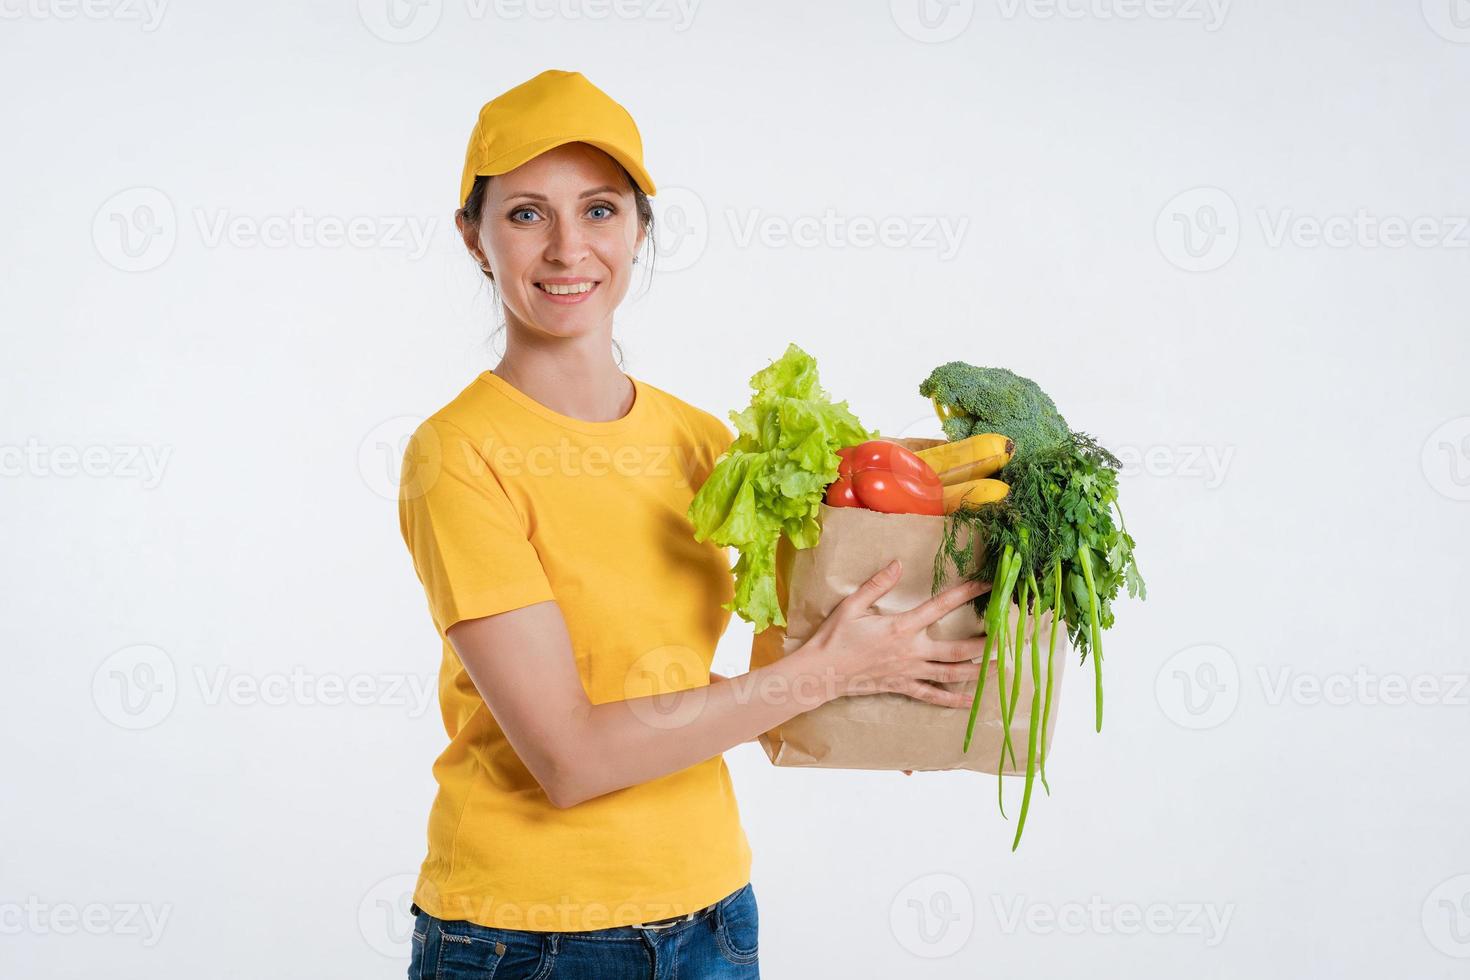 trabajadora de entrega de alimentos con paquete de alimentos foto